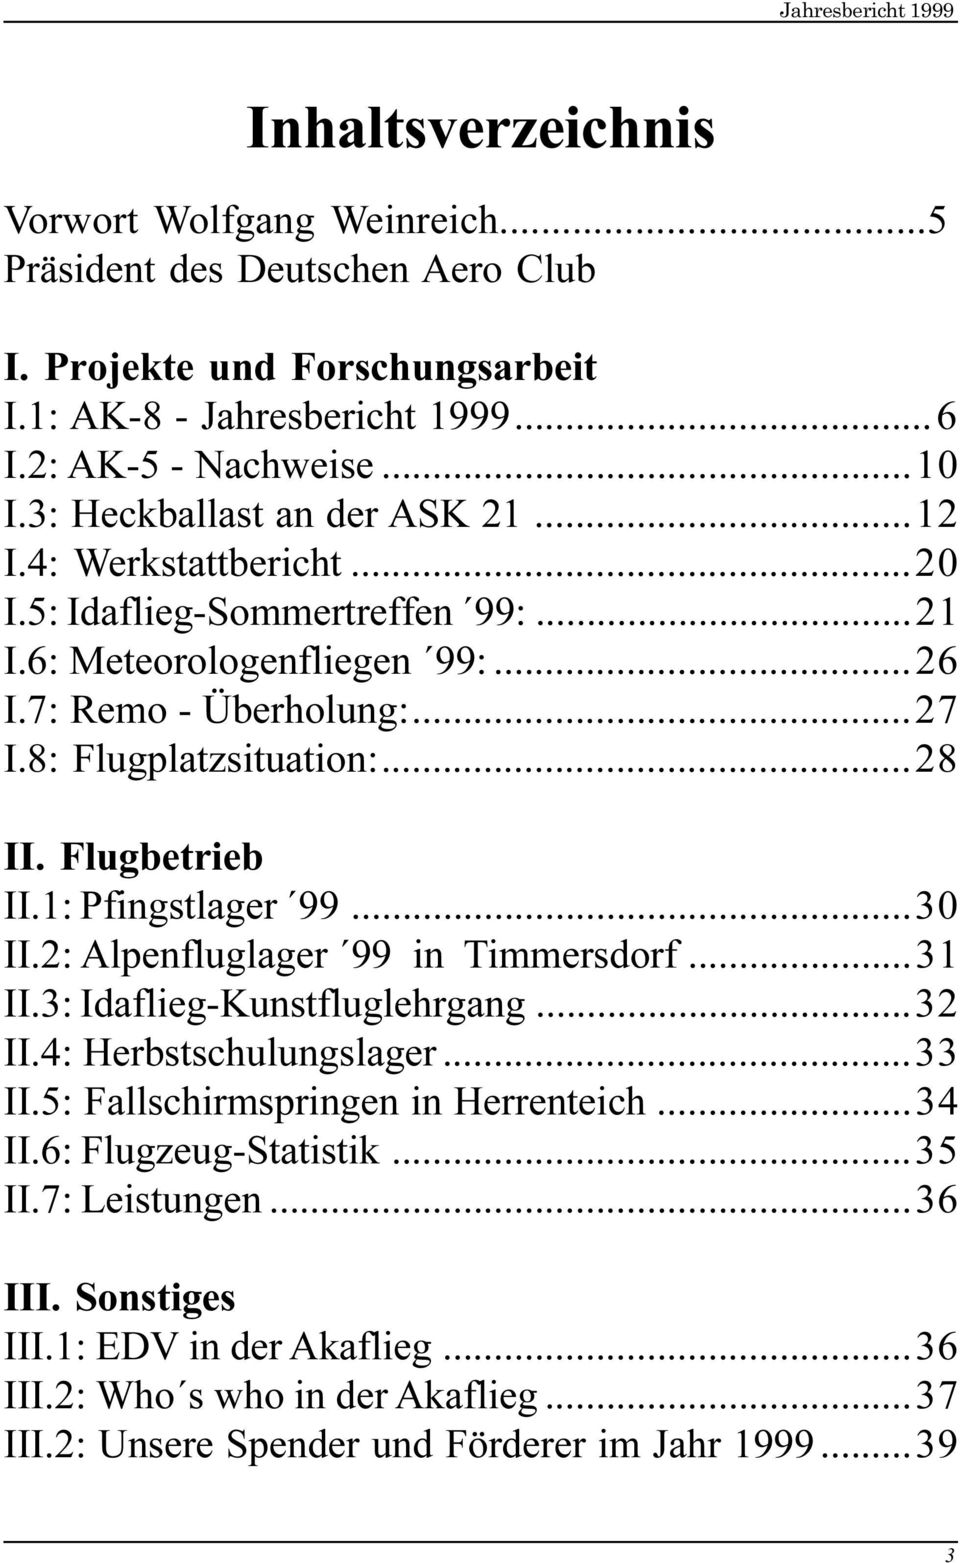 ..28 II. Flugbetrieb II.1: Pfingstlager 99...30 II.2: Alpenfluglager 99 in Timmersdorf...31 II.3: Idaflieg-Kunstfluglehrgang...32 II.4: Herbstschulungslager...33 II.